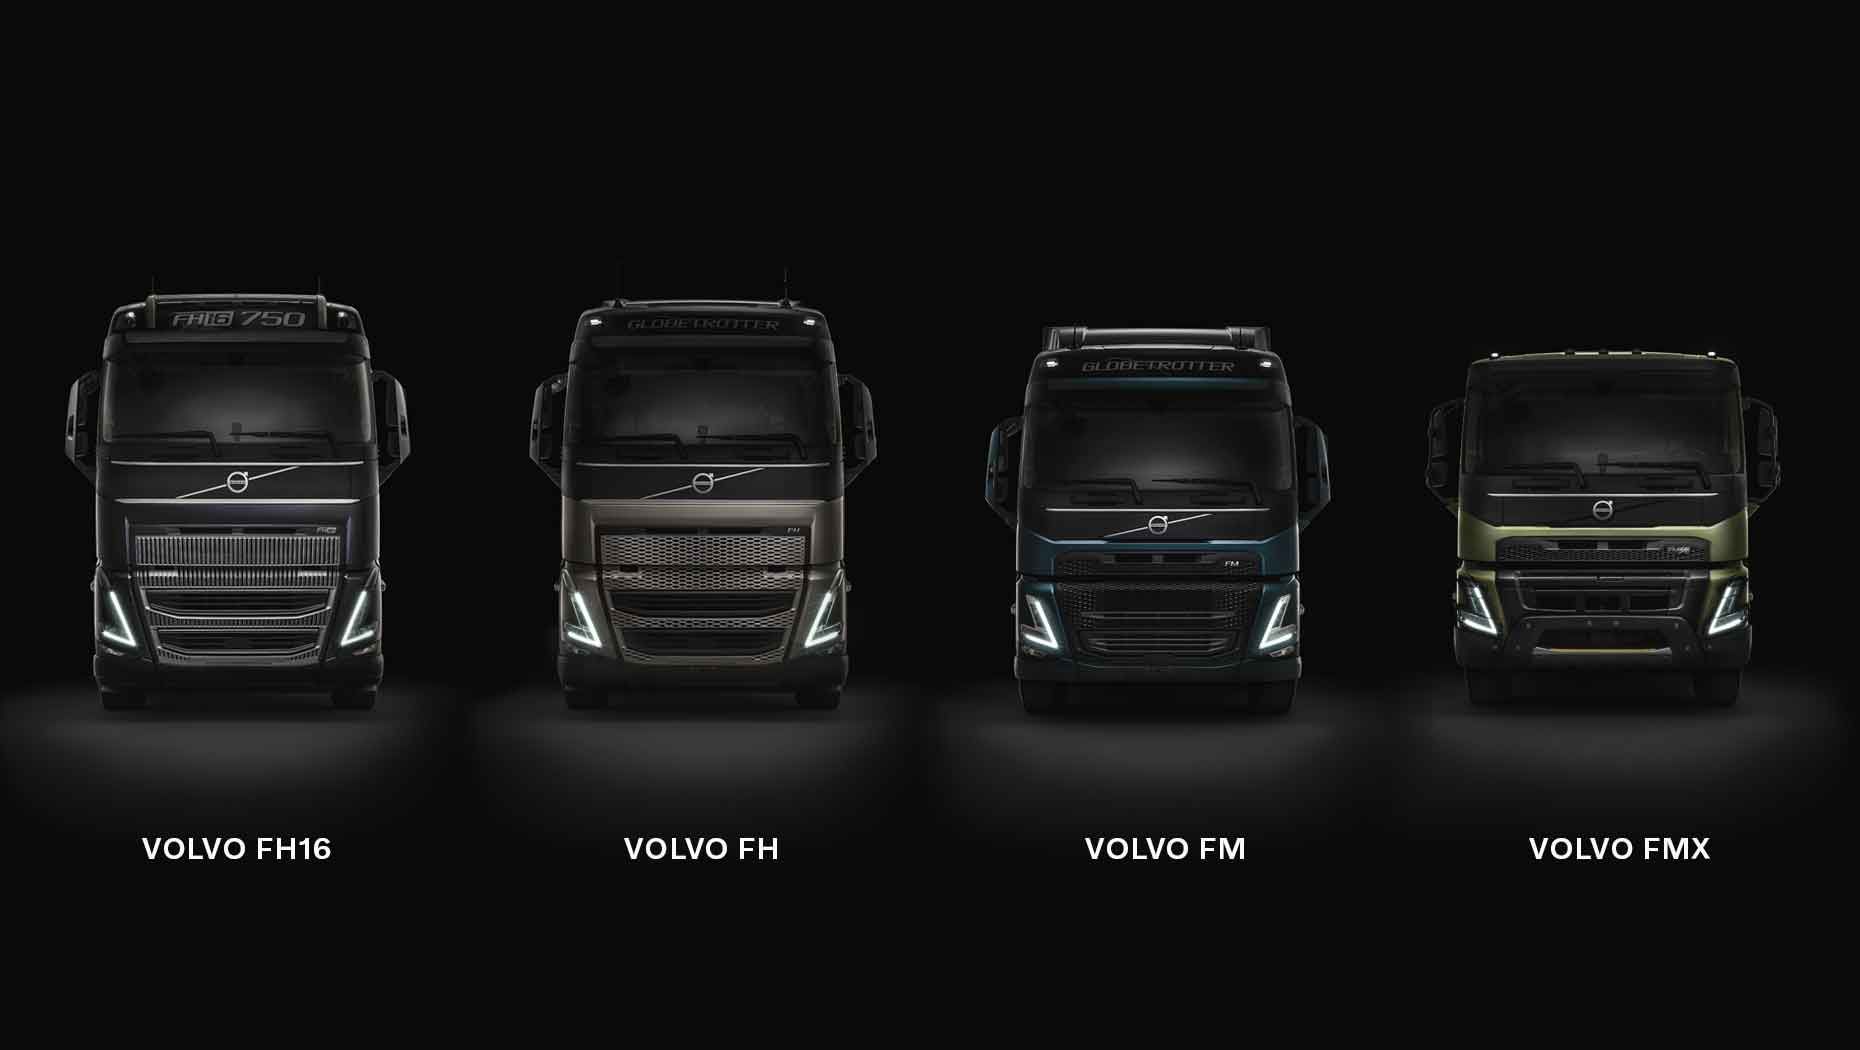 Vista frontal do Volvo FH16, Volvo FH, Volvo FM e Volvo FMX com um fundo escuro